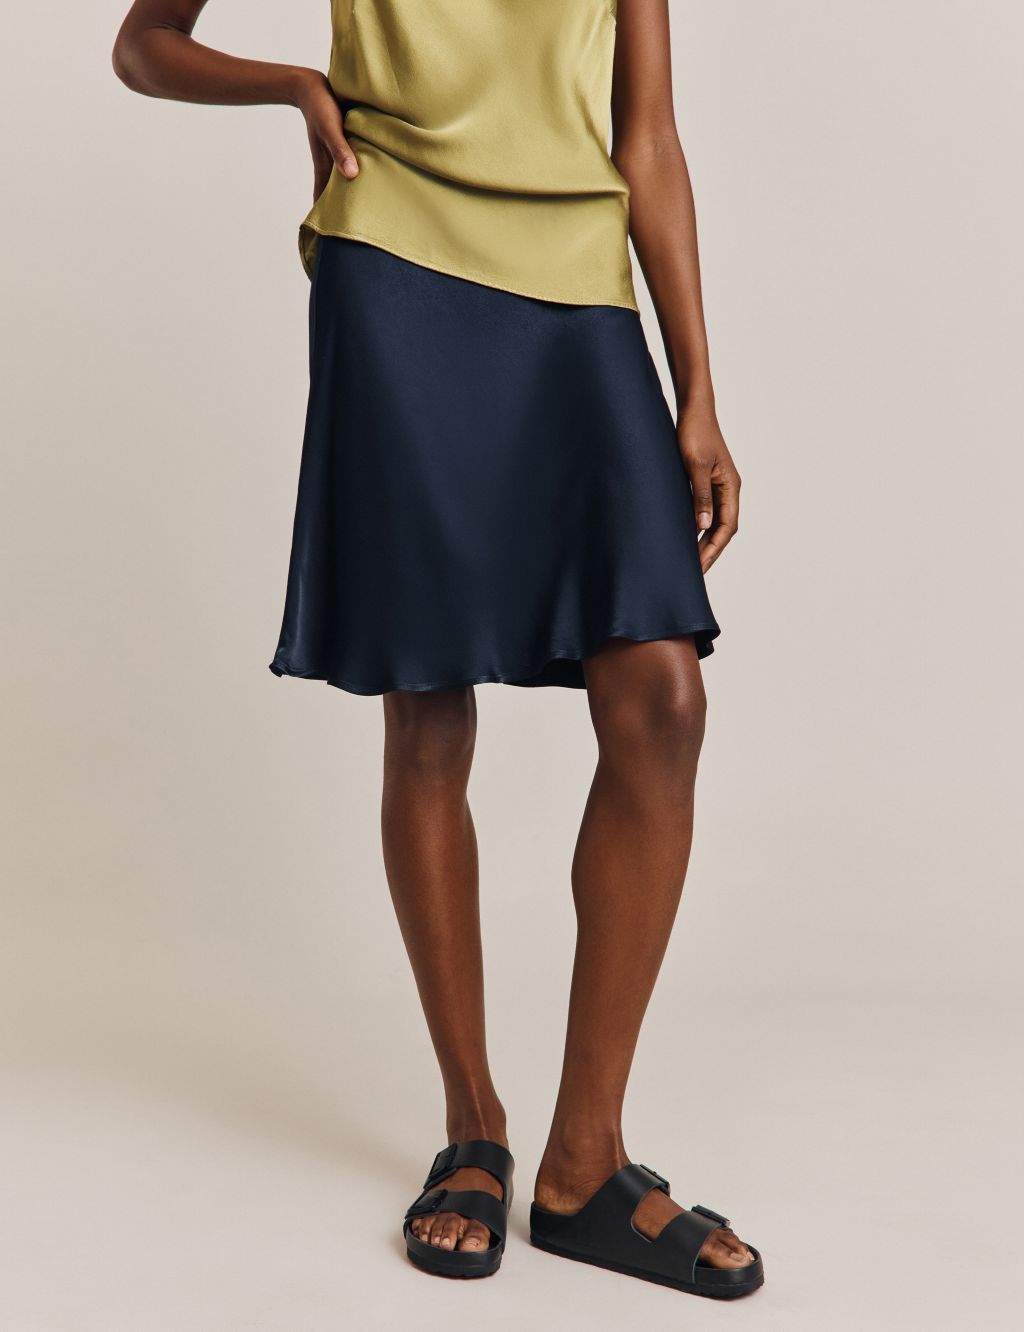 Satin Knee Length Slip Skirt image 4